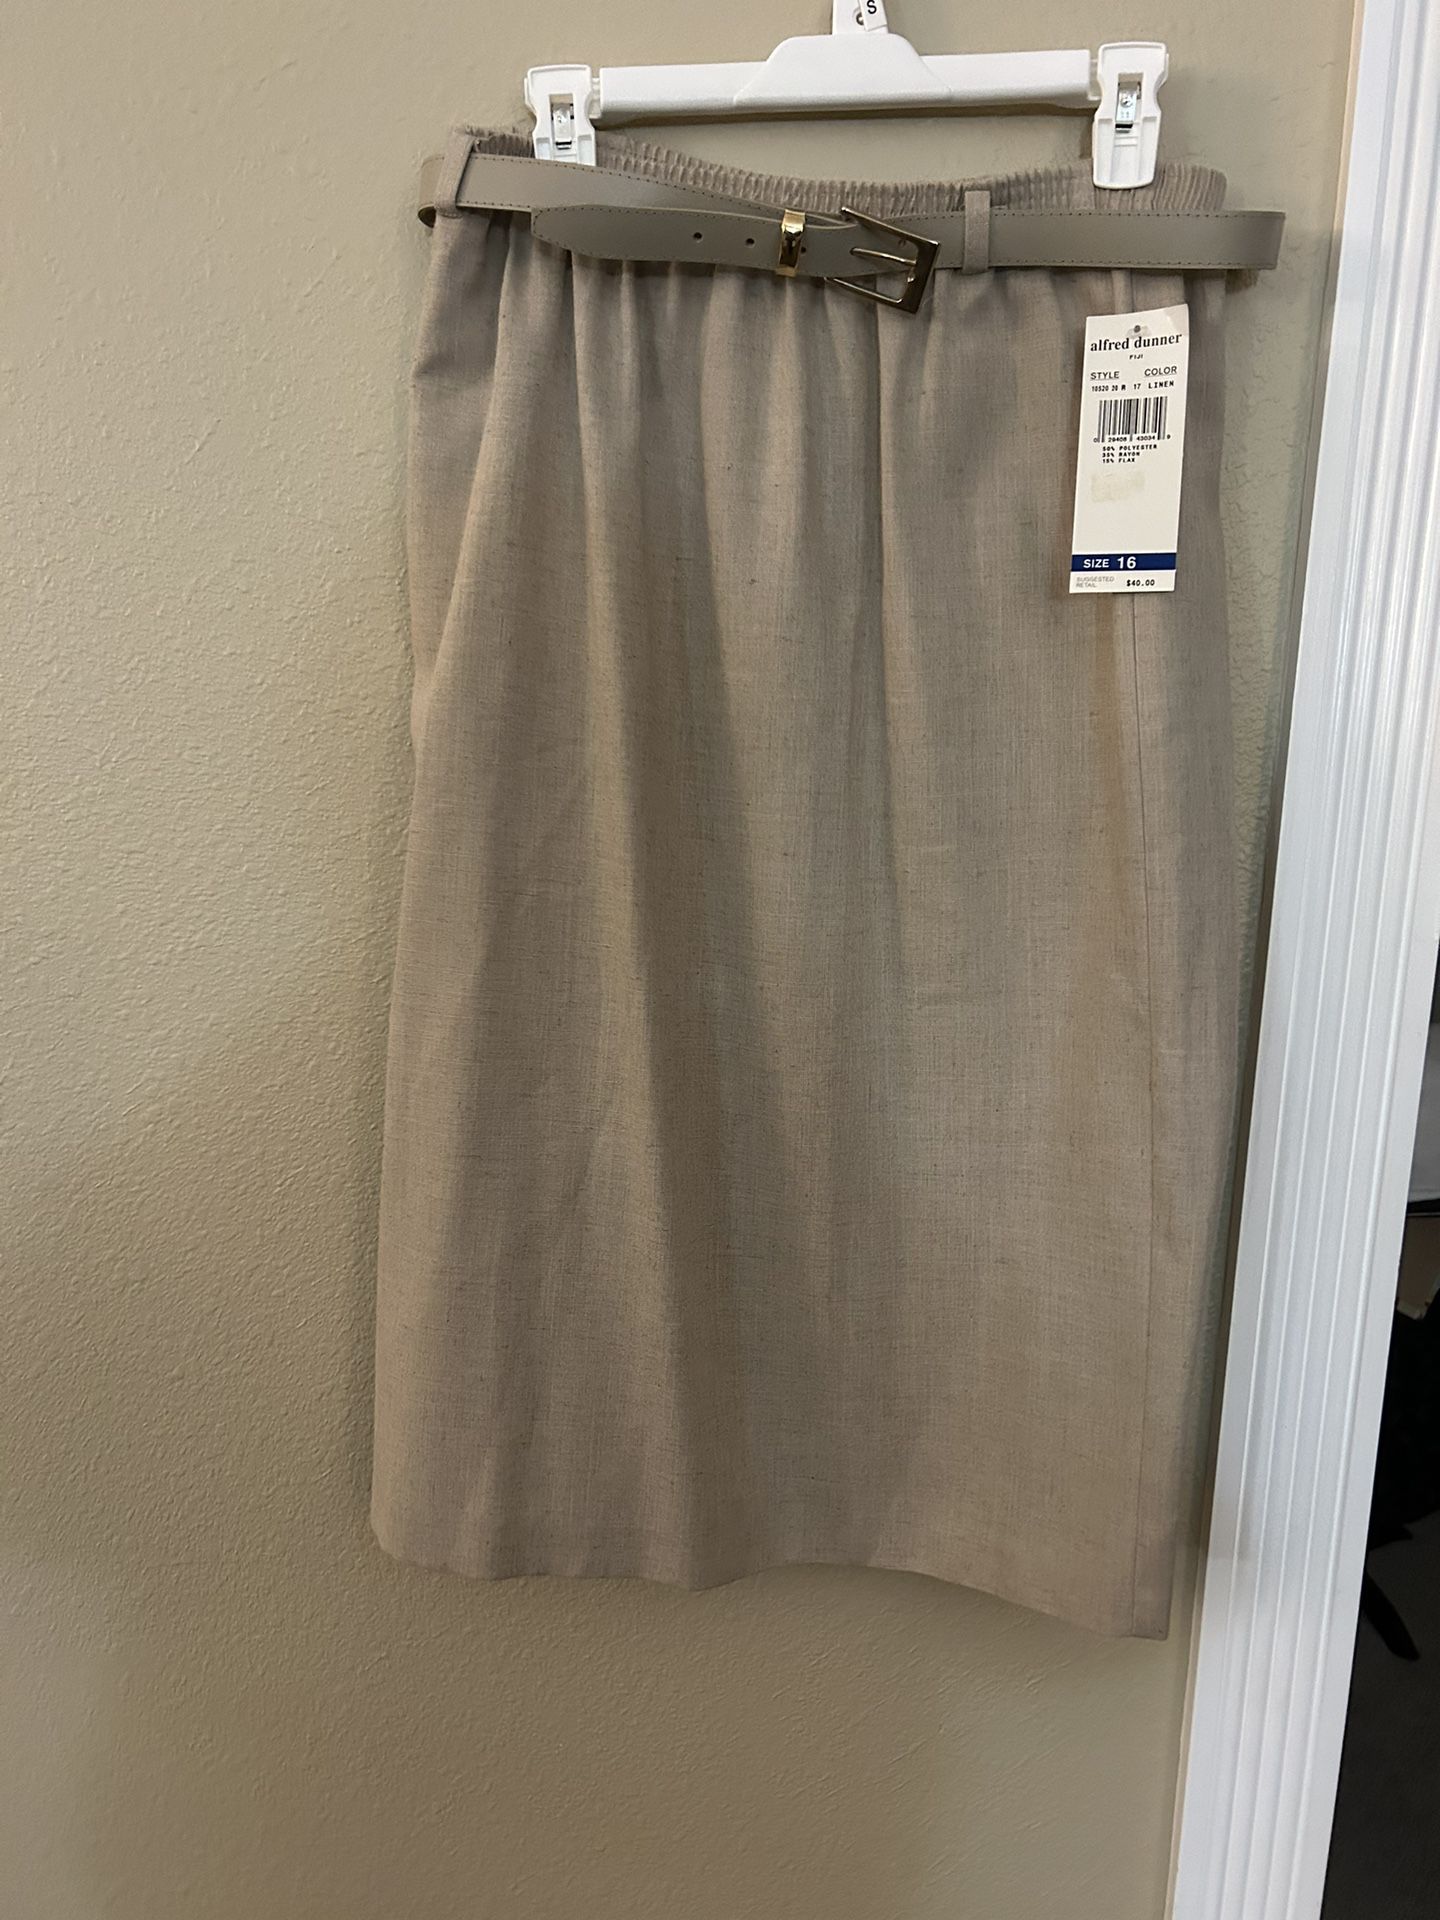 ALFRED DUNNER Women’s Pull-On Skirt w/ Belt, NWT, Size 16